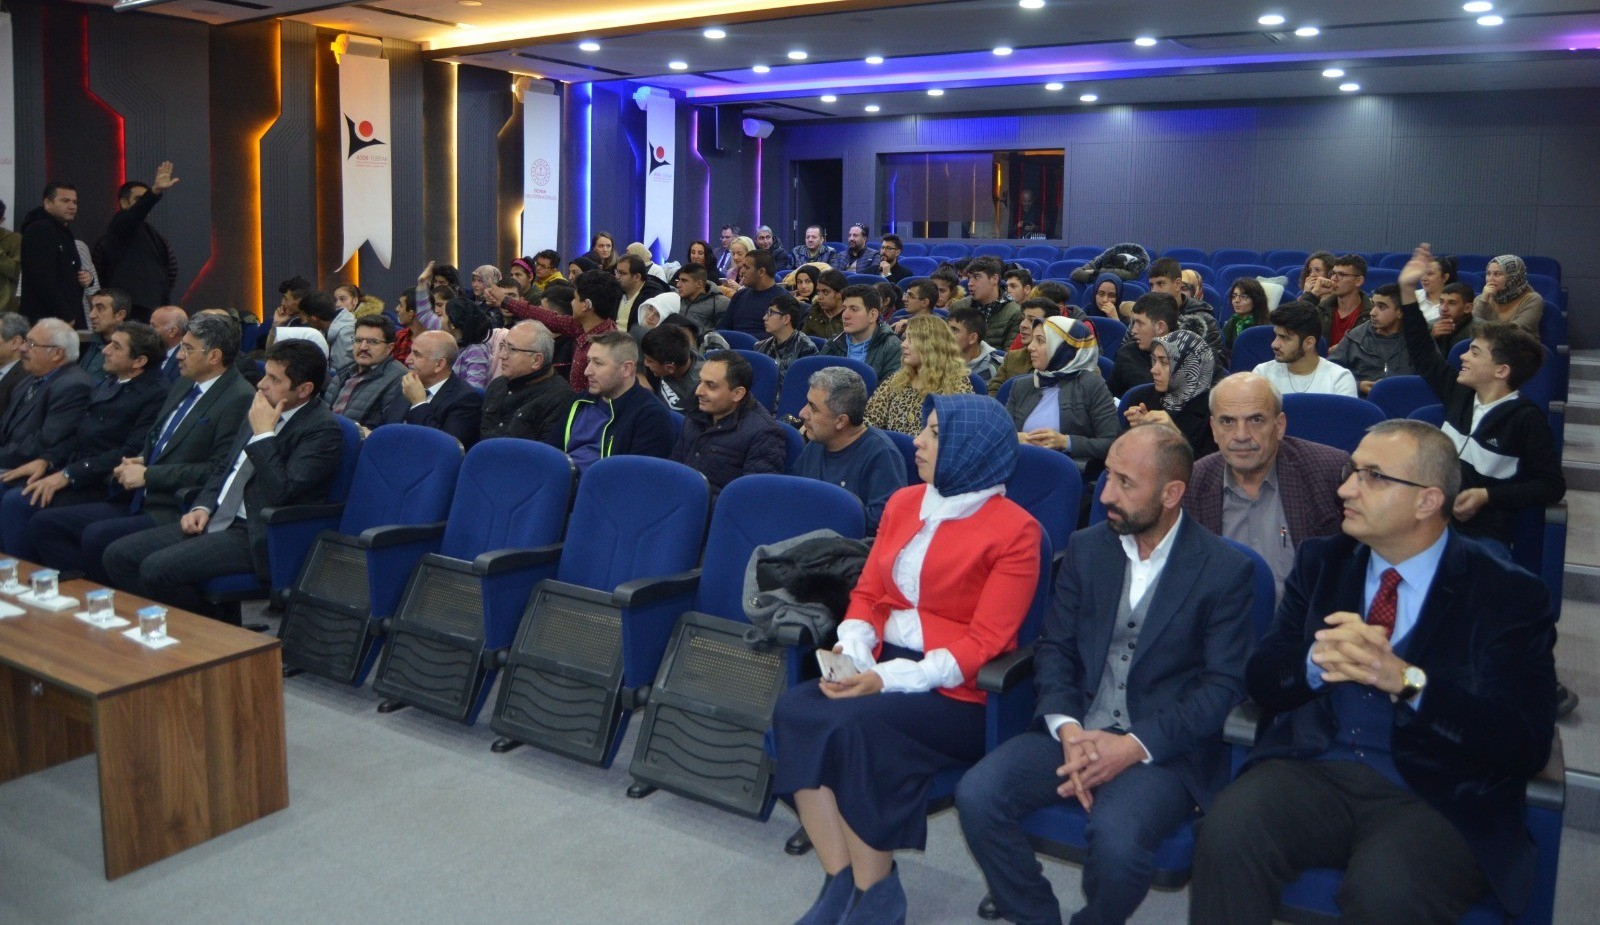 “Özel Gereksinimli Hayata Destek” projesinin açılışı Bilim Erzurum’da gerçekleştirildi